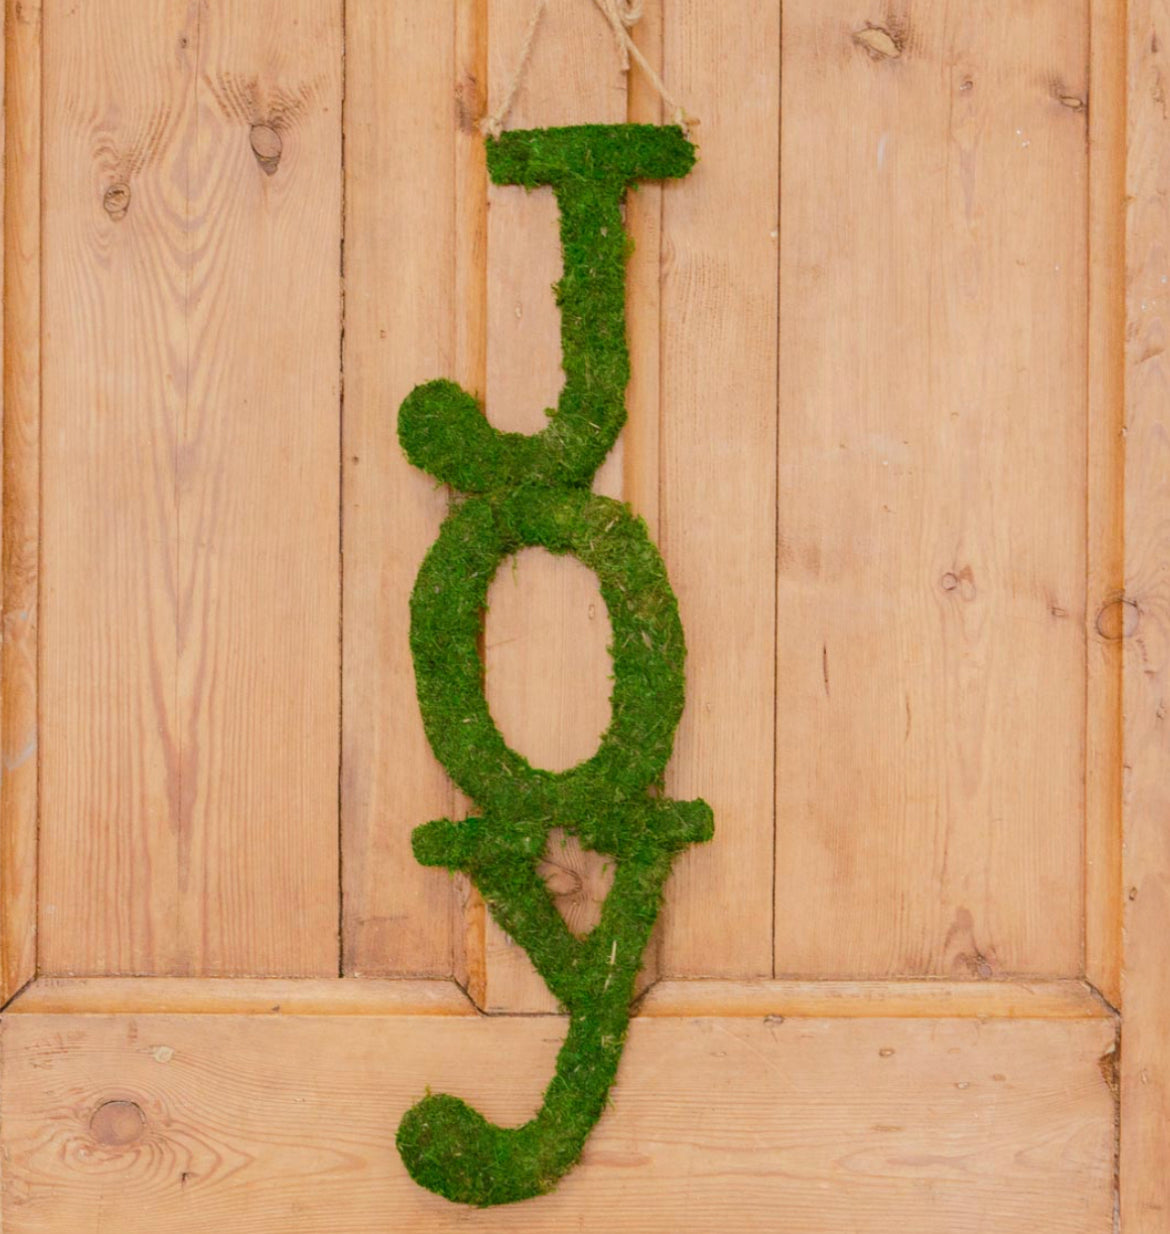 Vertical “JOY” moss wreath